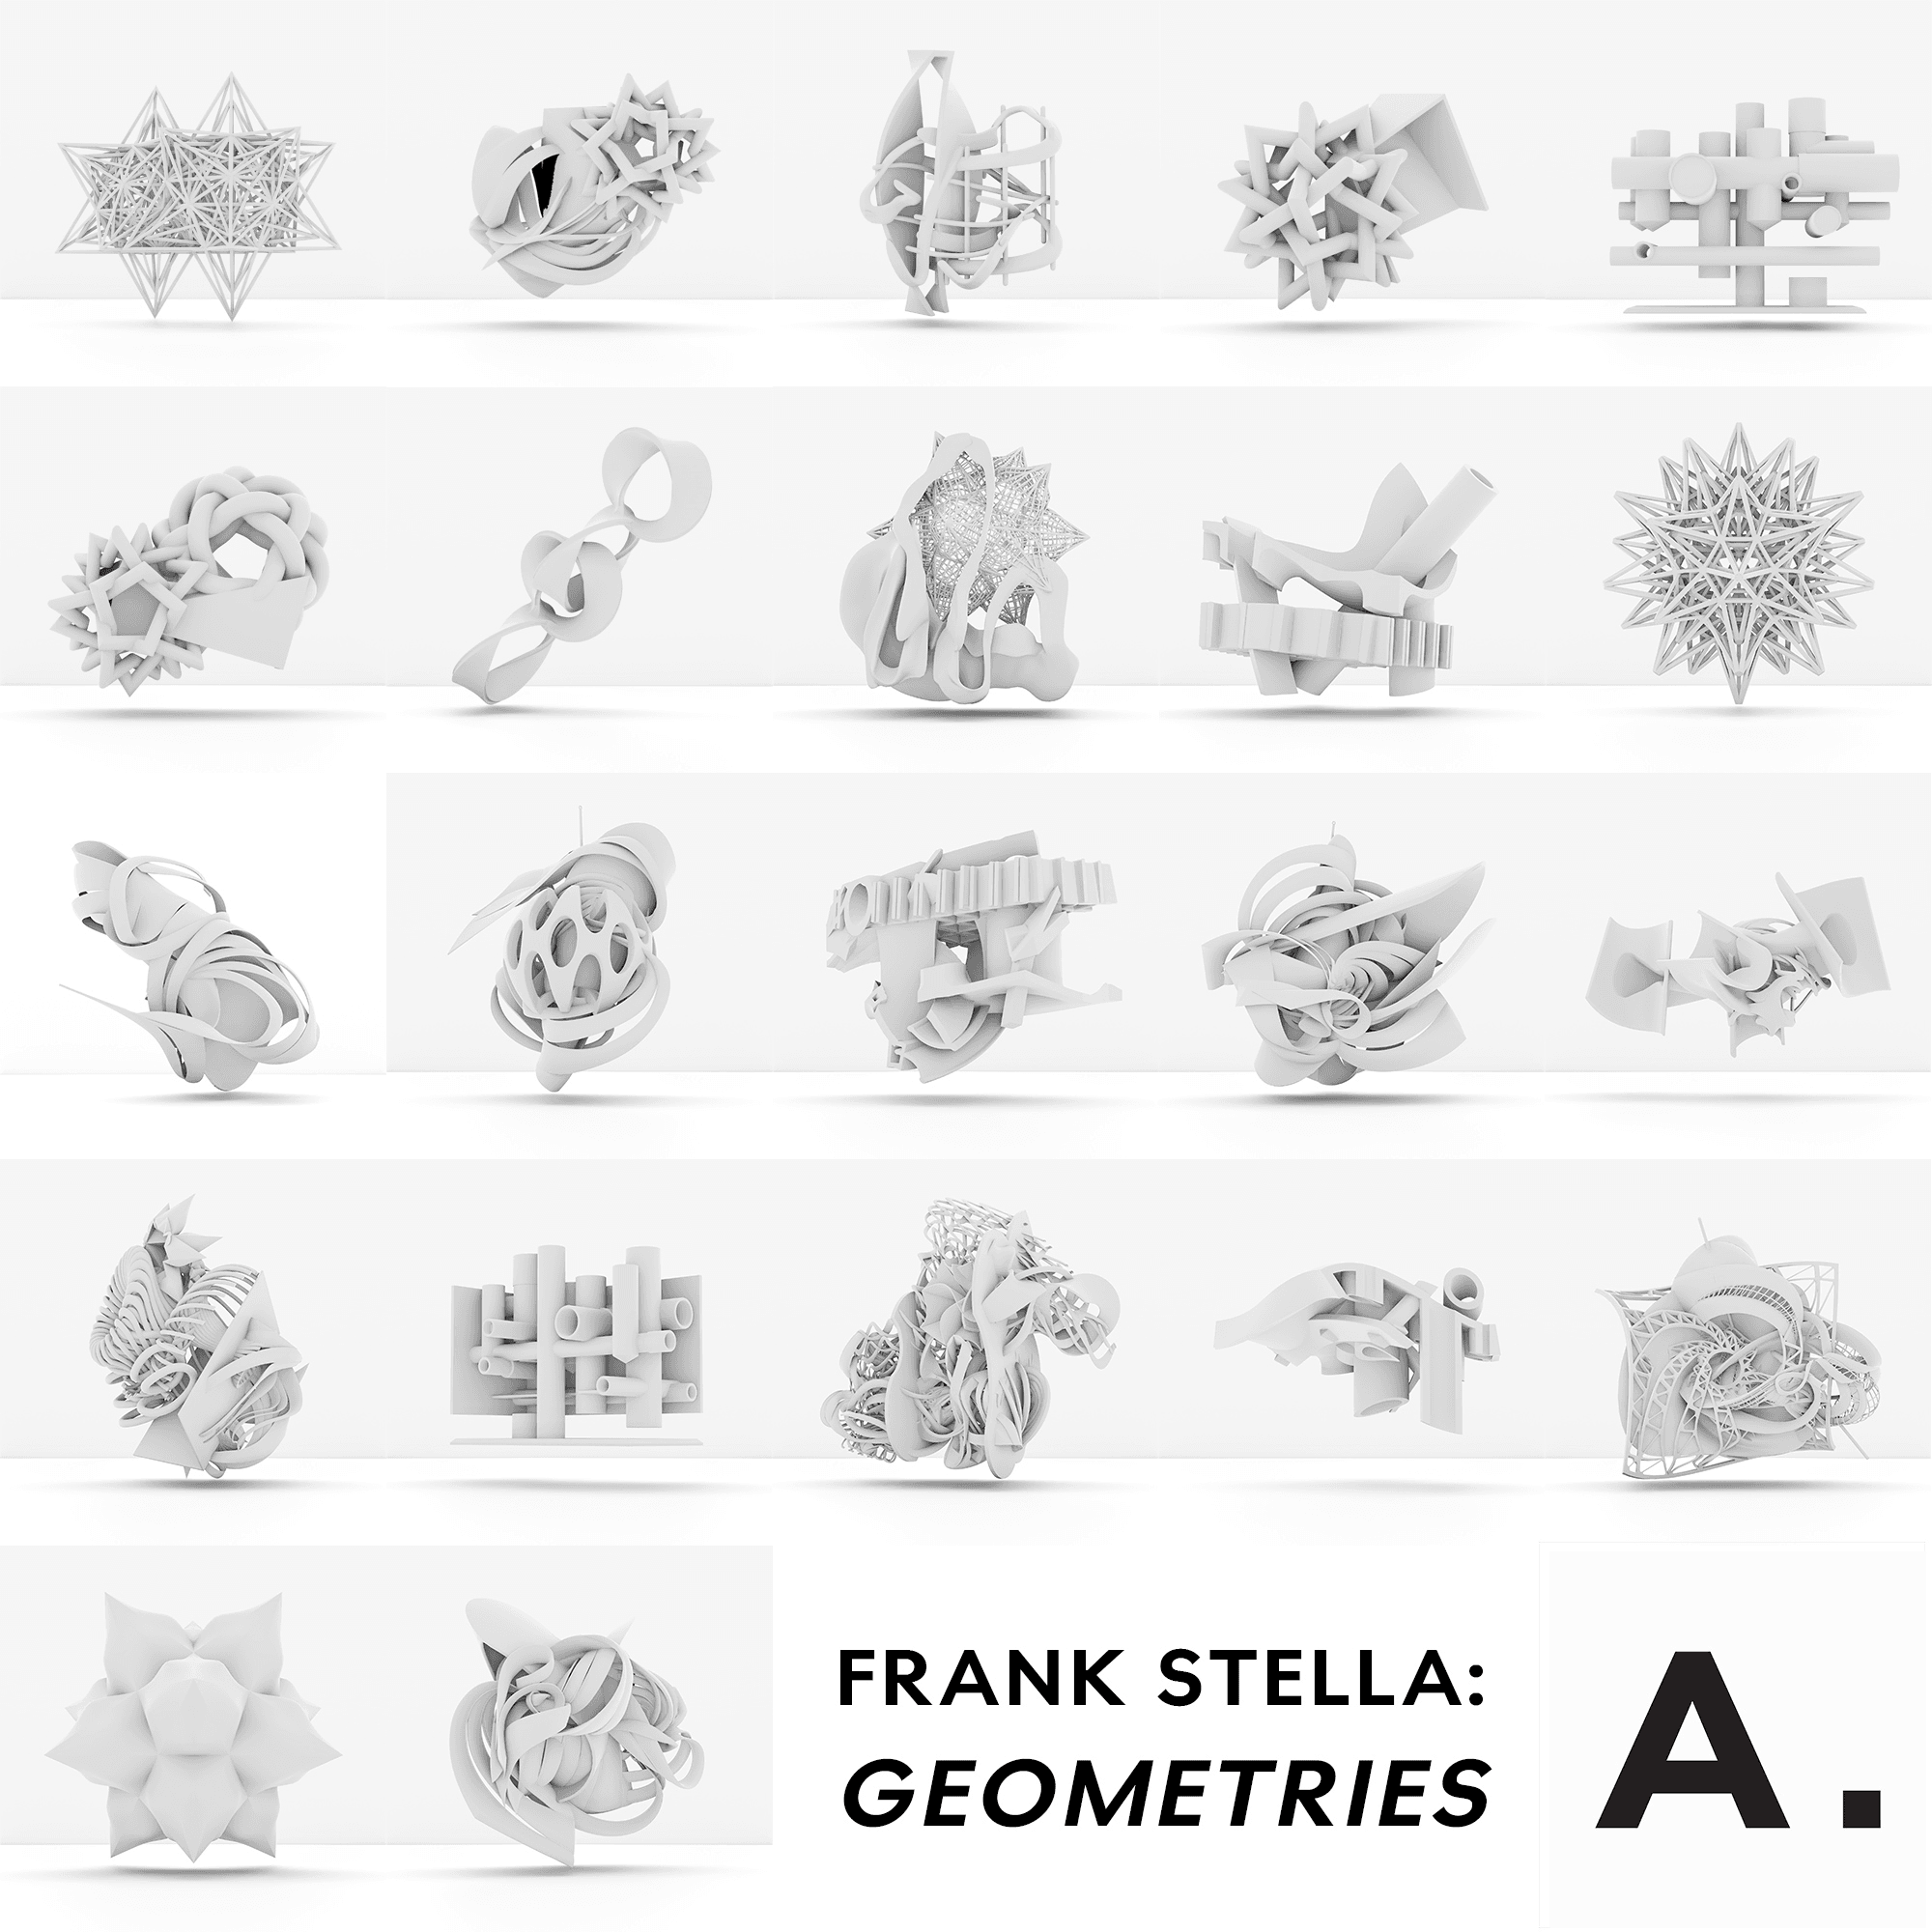 Frank Stella: Geometries